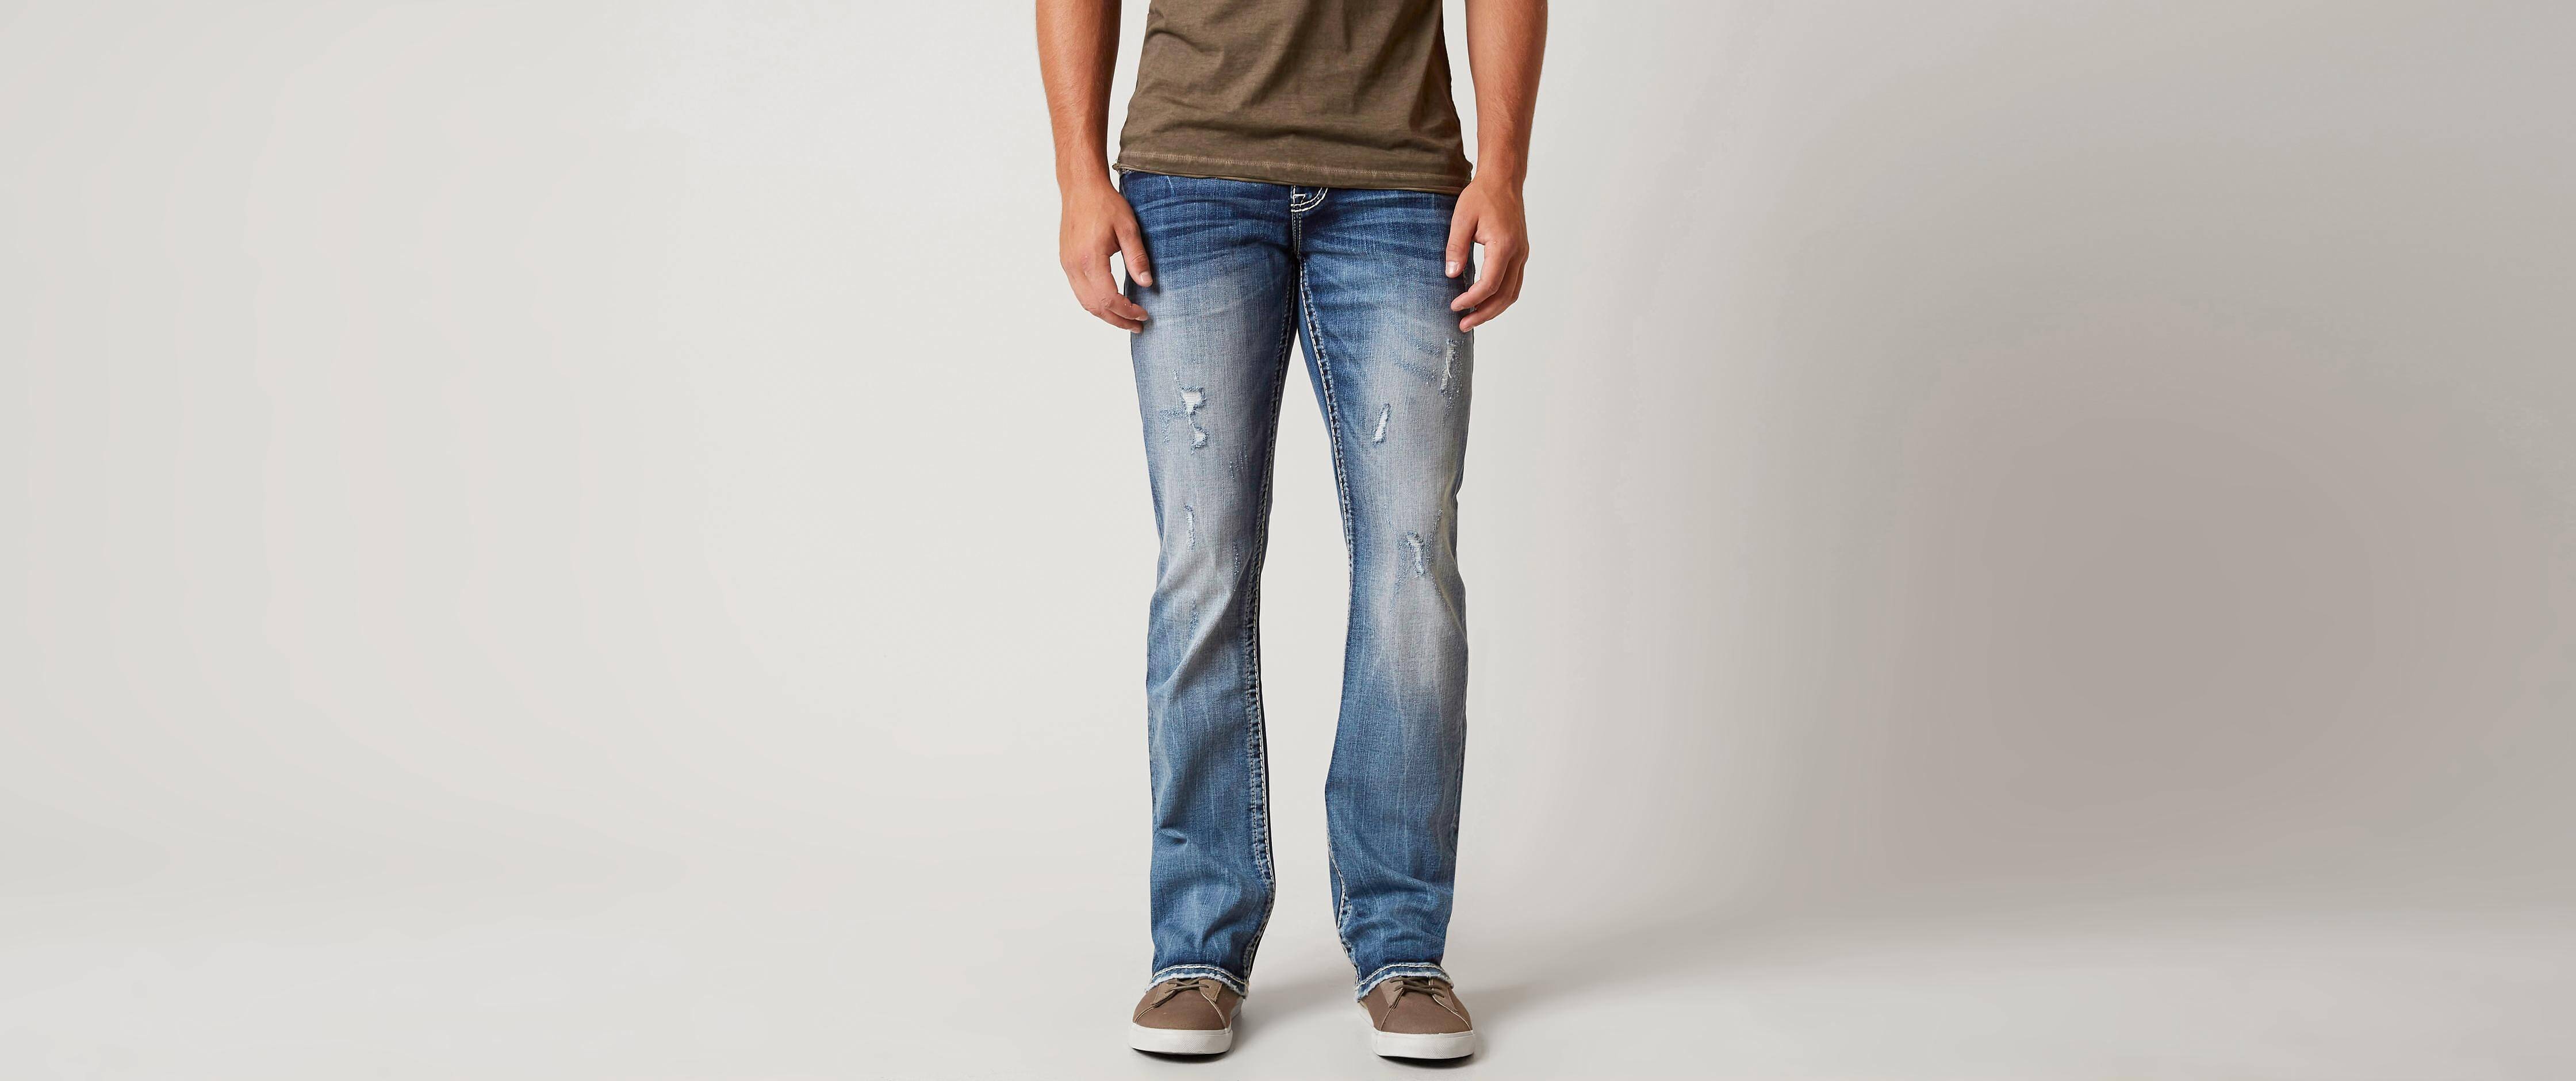 rock revival mens jeans size 32